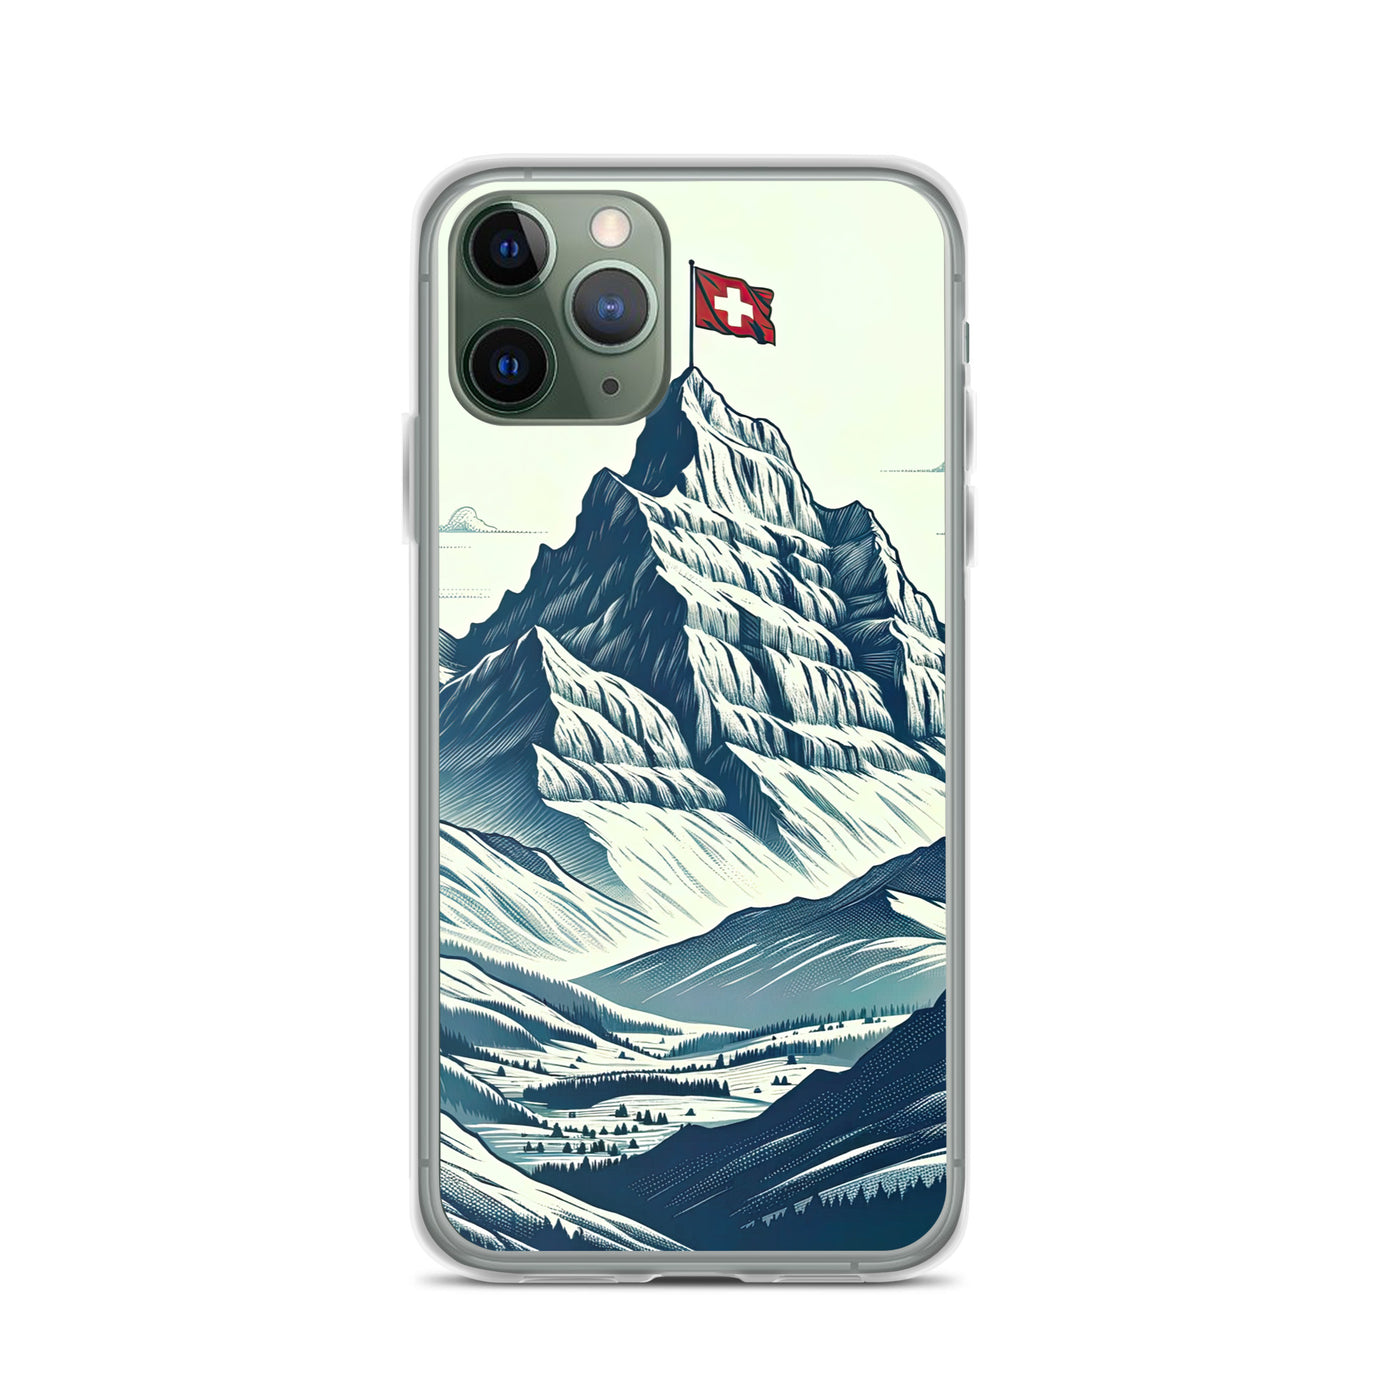 Ausgedehnte Bergkette mit dominierendem Gipfel und wehender Schweizer Flagge - iPhone Schutzhülle (durchsichtig) berge xxx yyy zzz iPhone 11 Pro